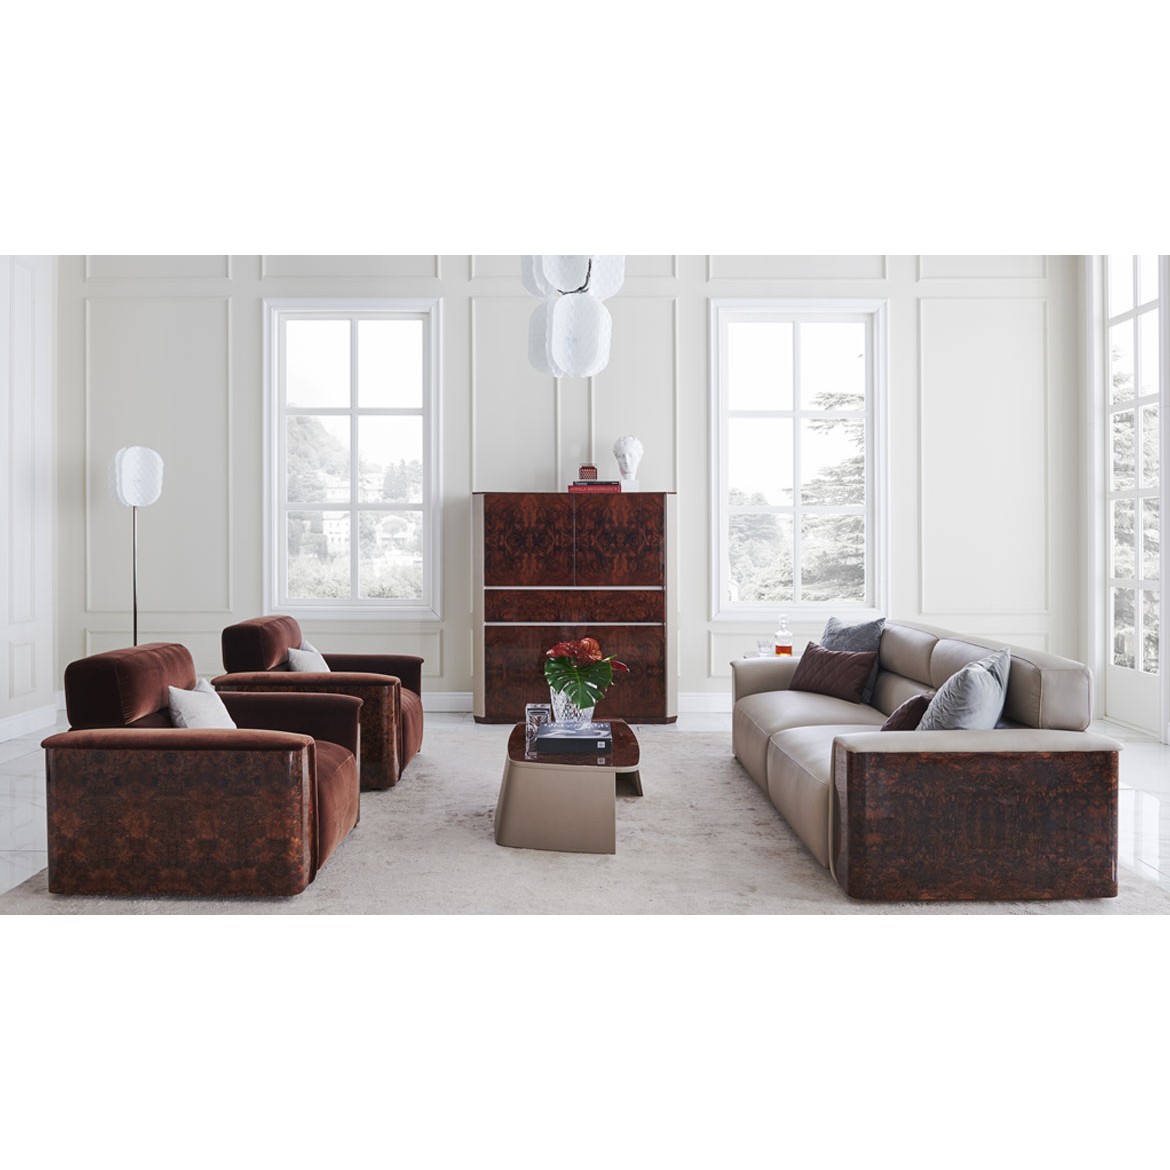 Диван Portobello Sofa, дизайн Bentley Home